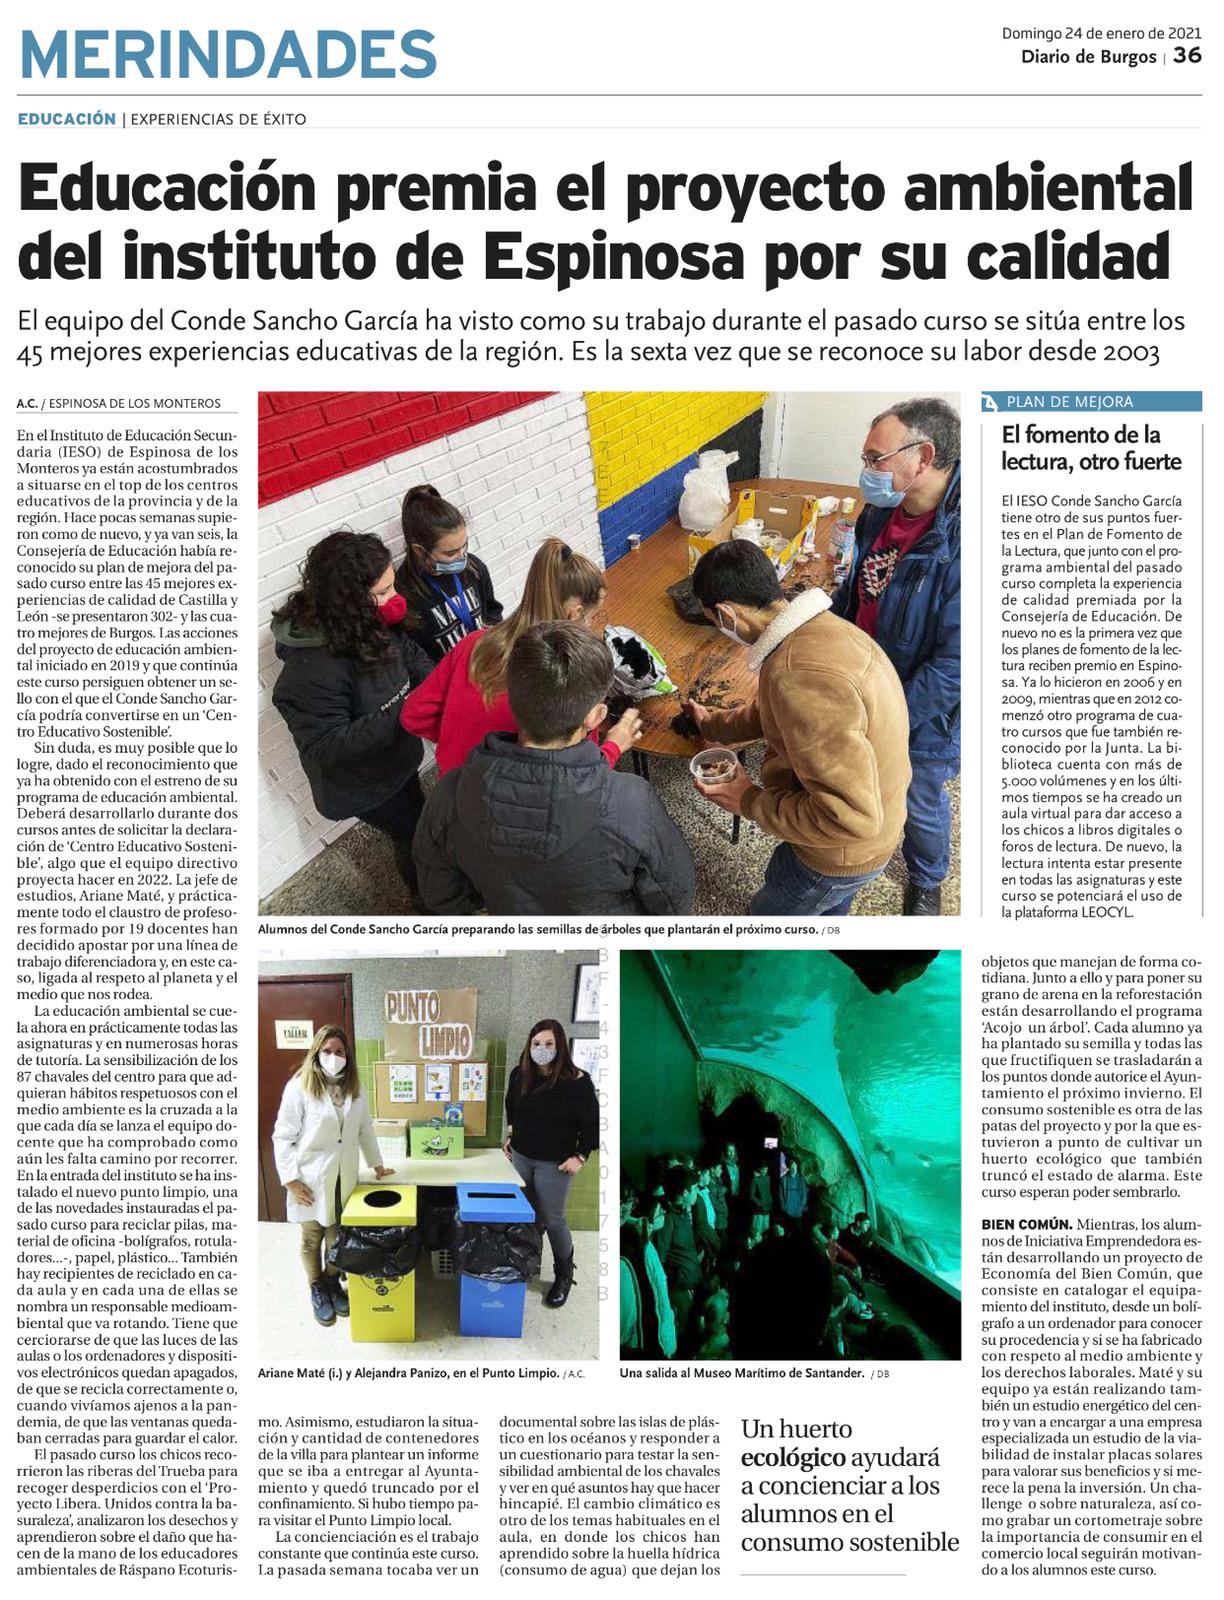 Diario de Burgos - Premio de calidad al proyecto ambiental